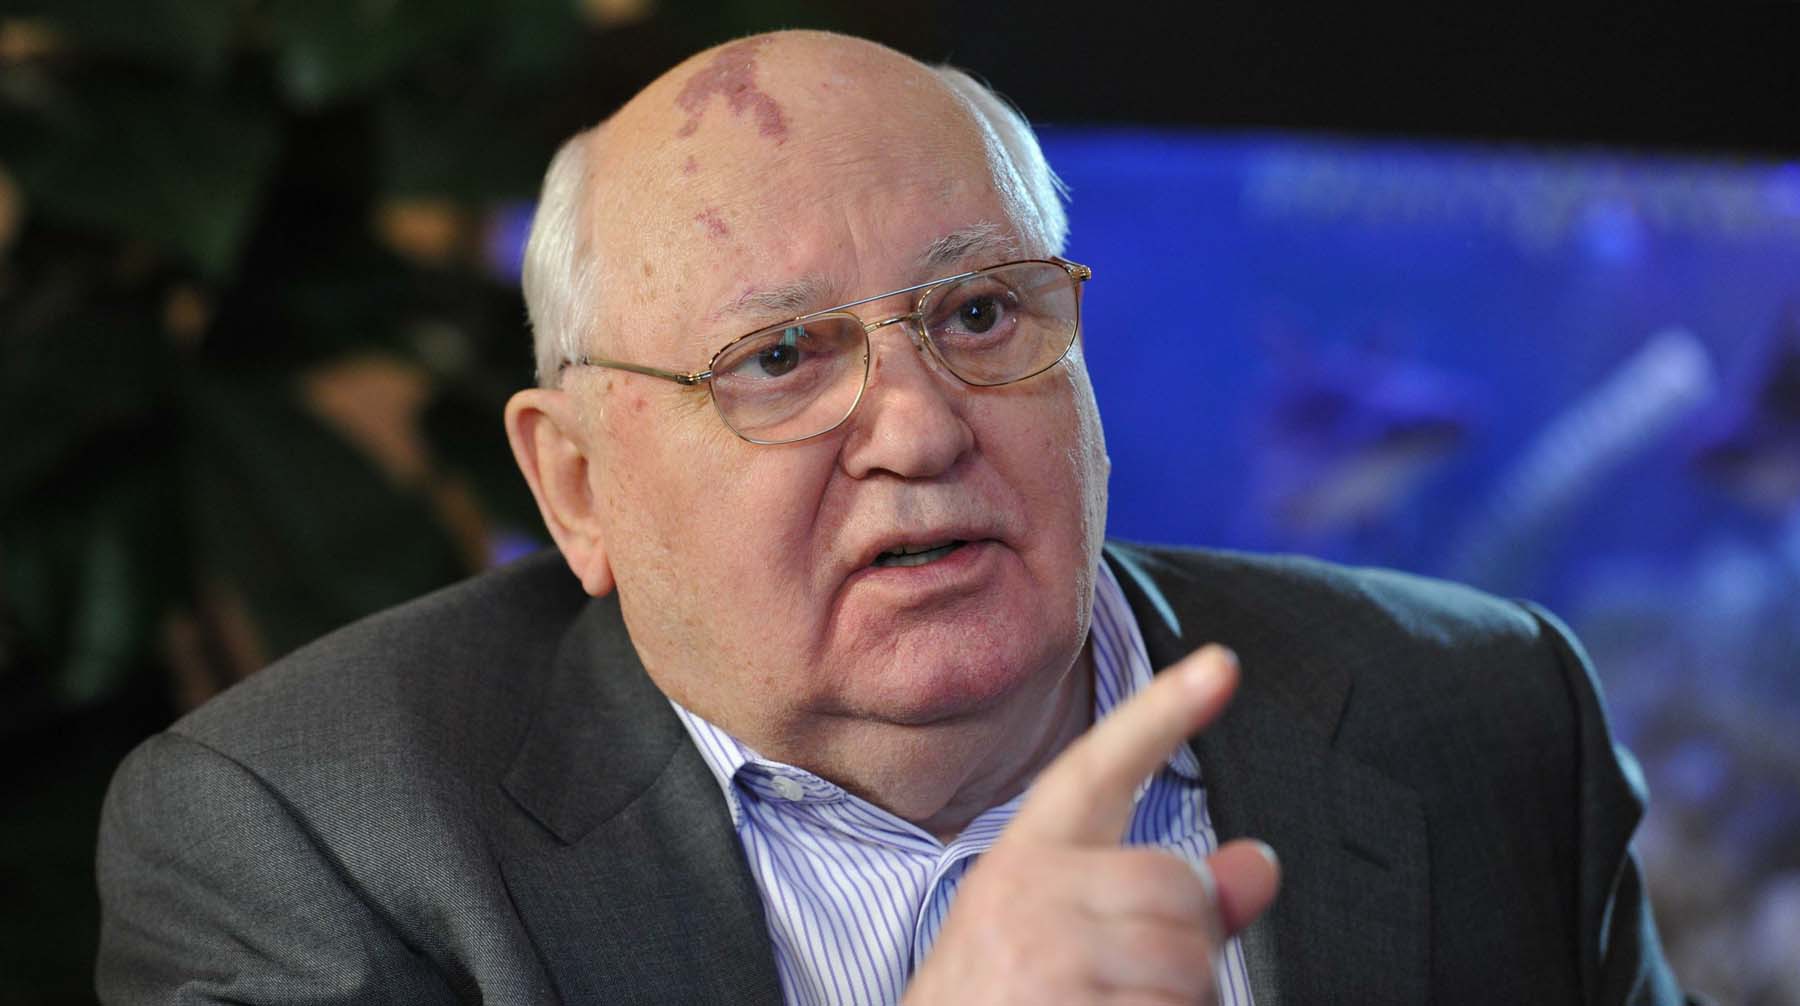 Dailystorm - Горбачев назвал переходом к демократии протесты в Белоруссии и Киргизии в 2020 году